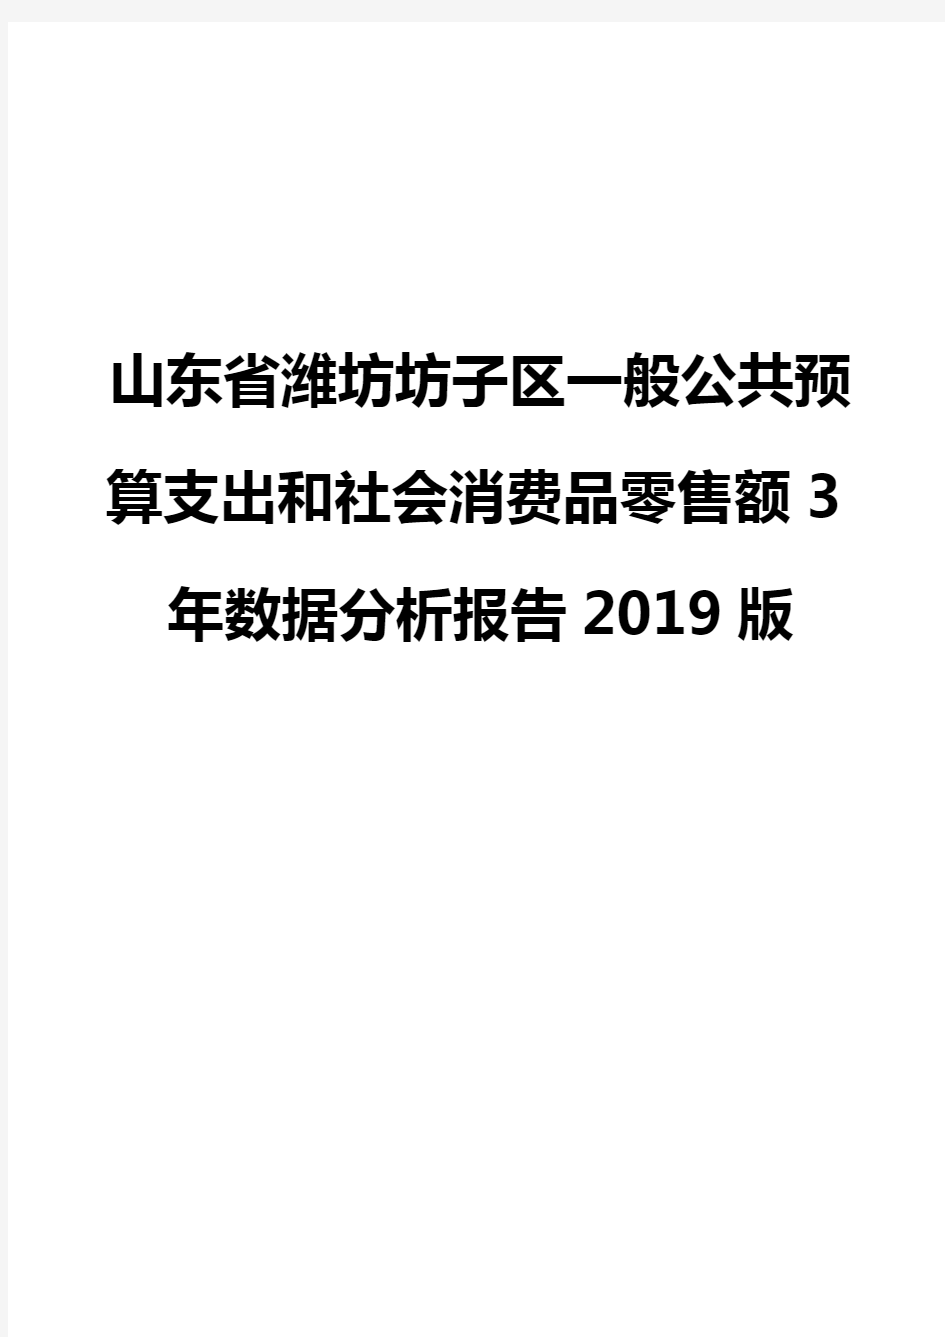 山东省潍坊坊子区一般公共预算支出和社会消费品零售额3年数据分析报告2019版